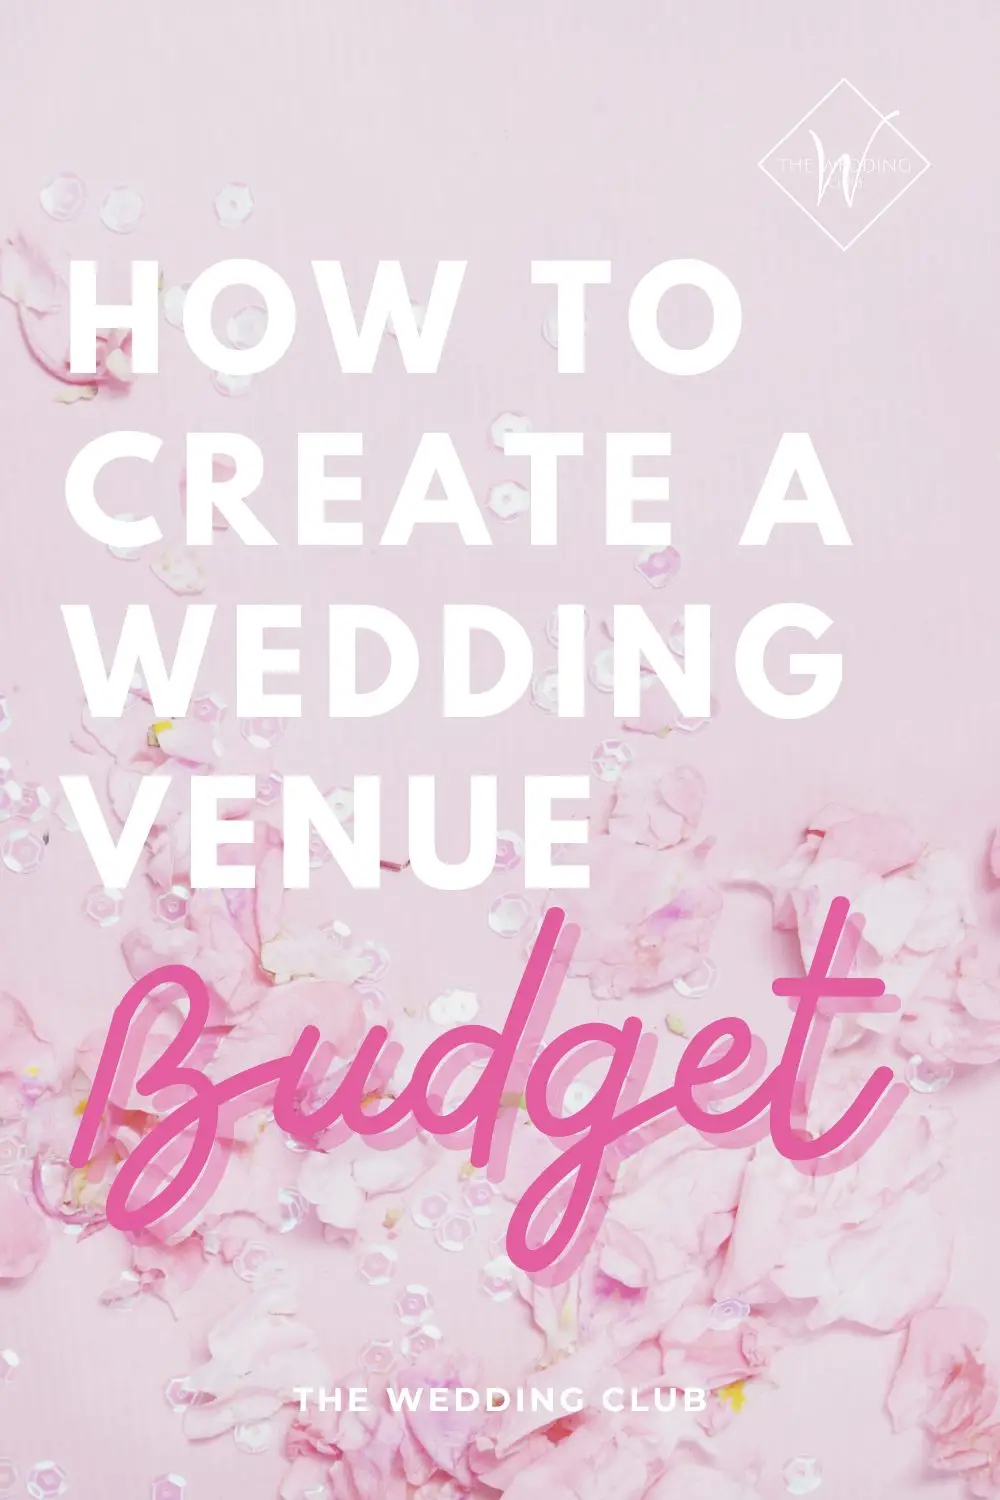 How to create a wedding venue budget